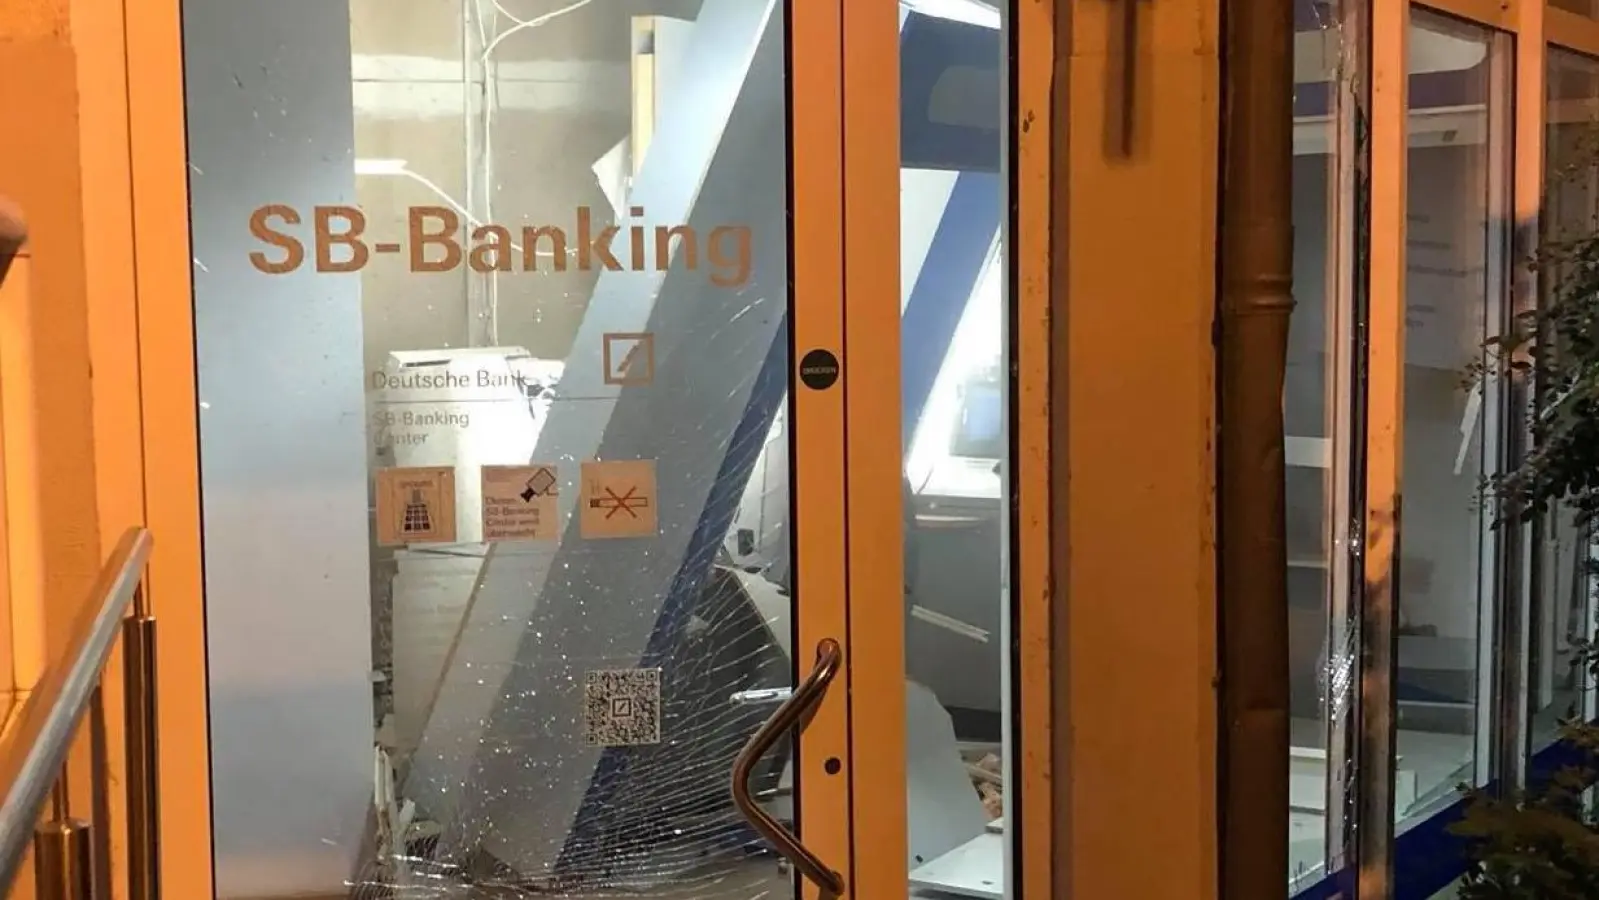 Unbekannte sprengen Geldautomat der Deutschen Bank in Taucha (Foto: taucha-kompakt.de)